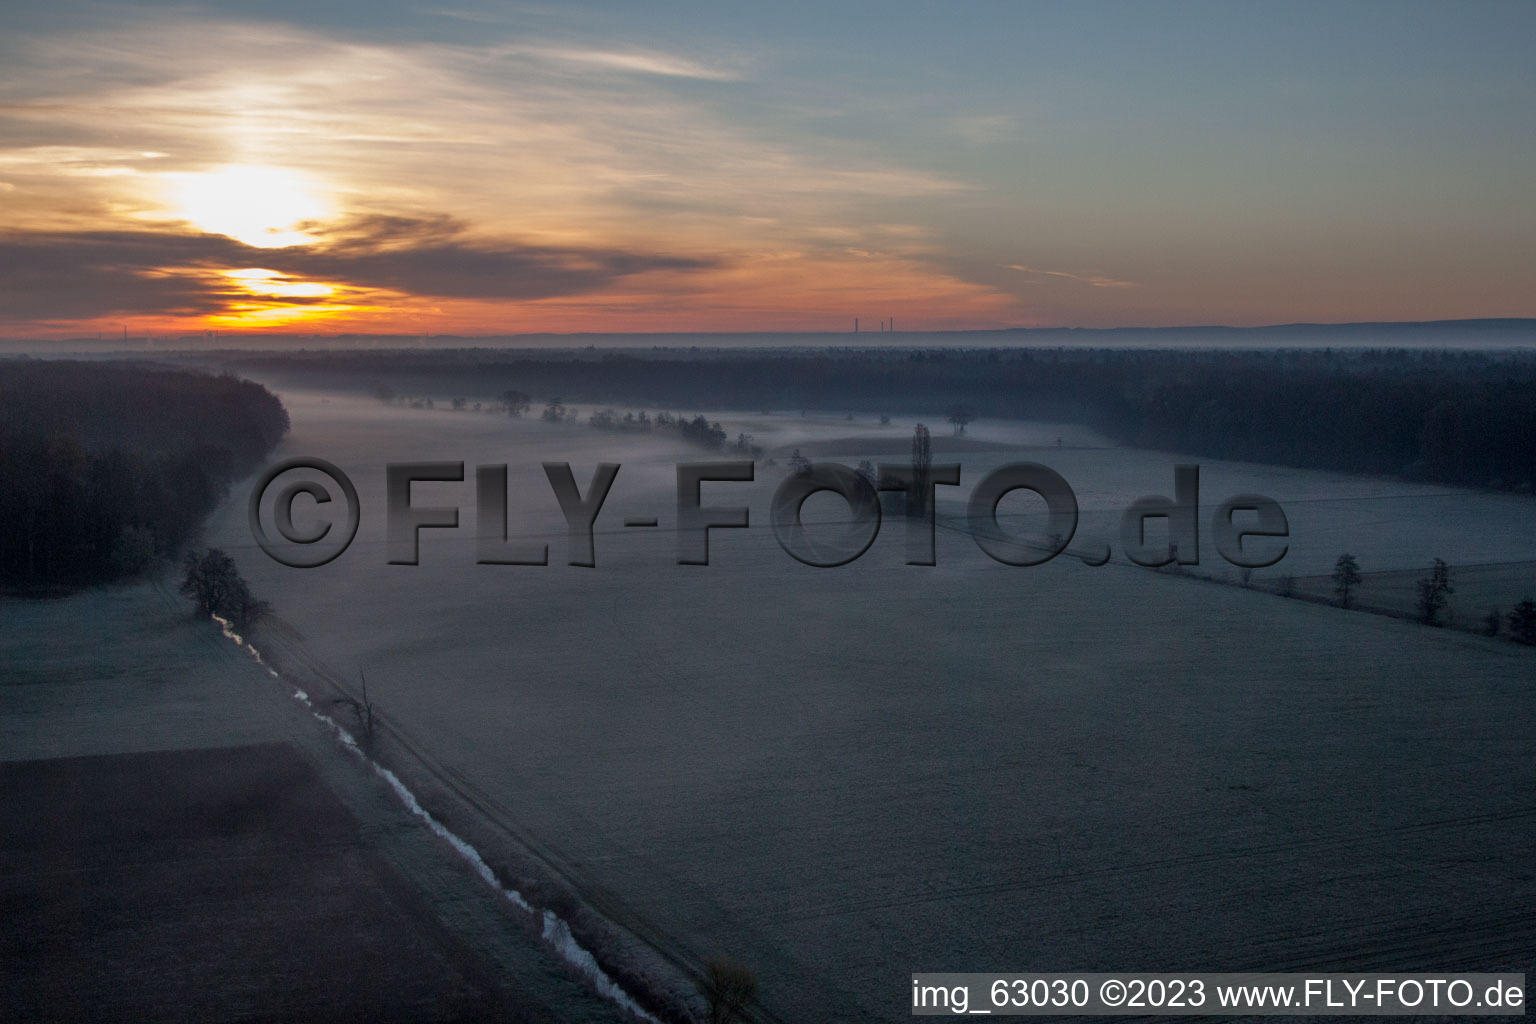 Minfeld, Otterbachtal im Bundesland Rheinland-Pfalz, Deutschland von einer Drohne aus